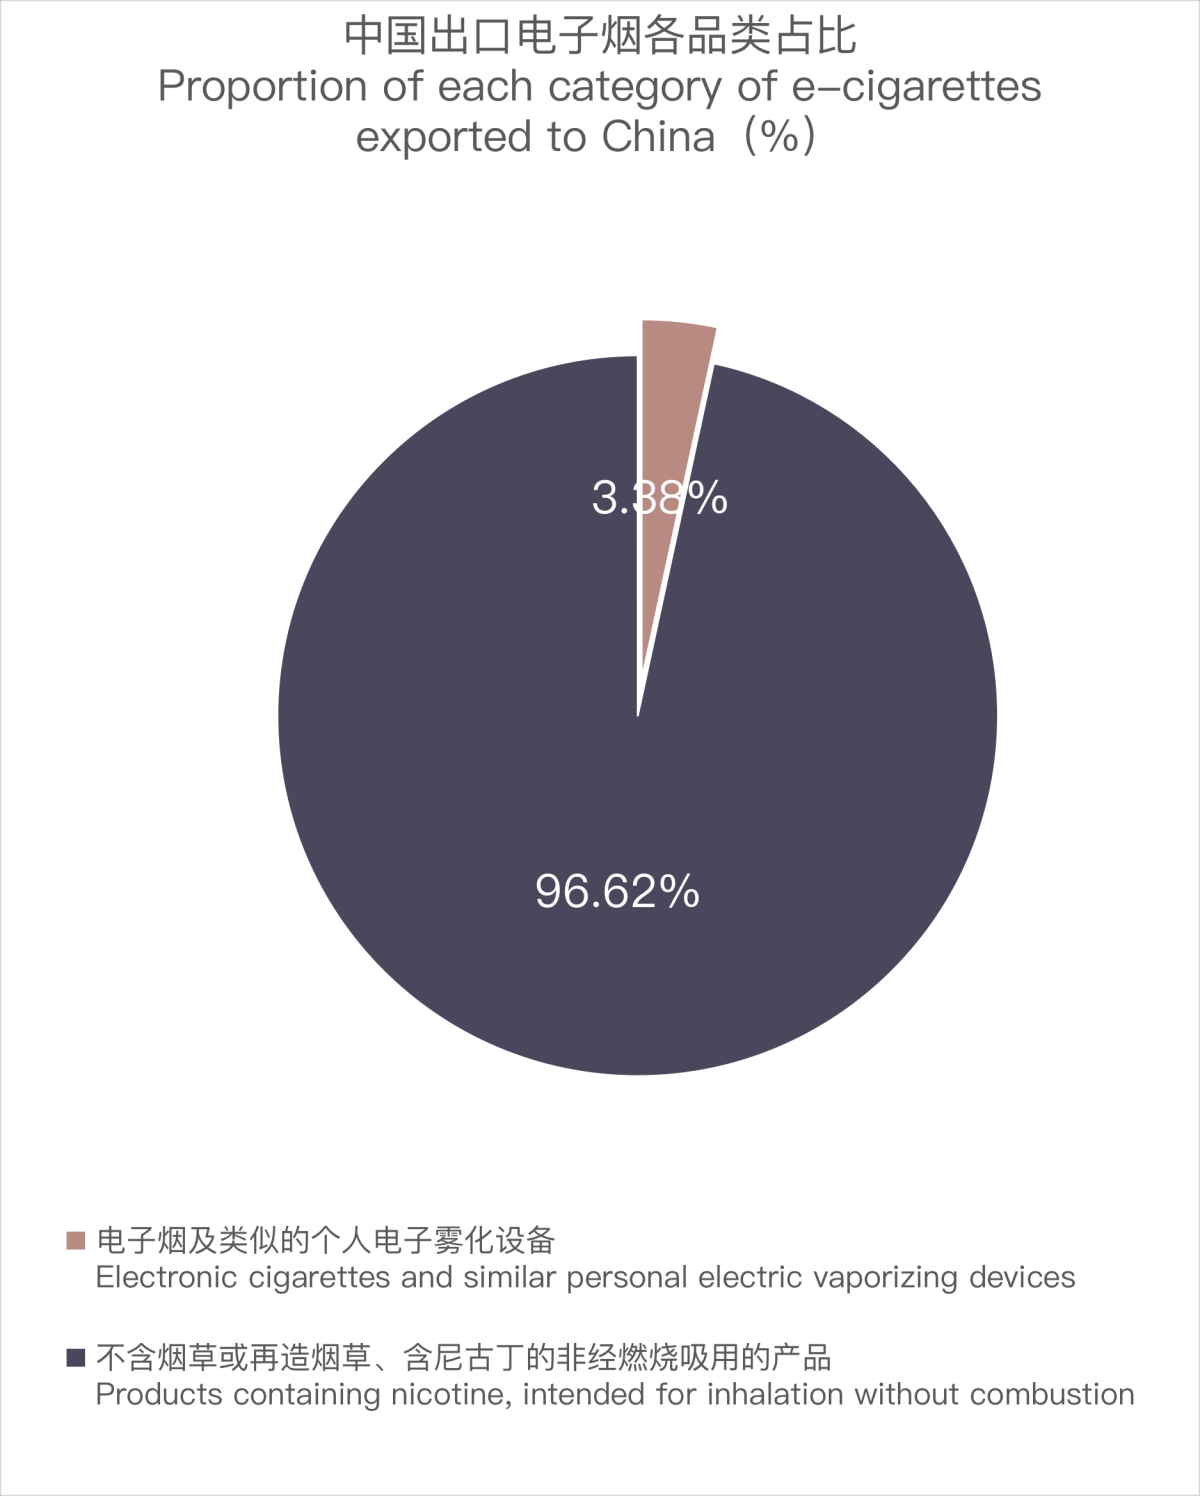 9月中国出口澳大利亚电子烟1739万美元 环比增长5.95%